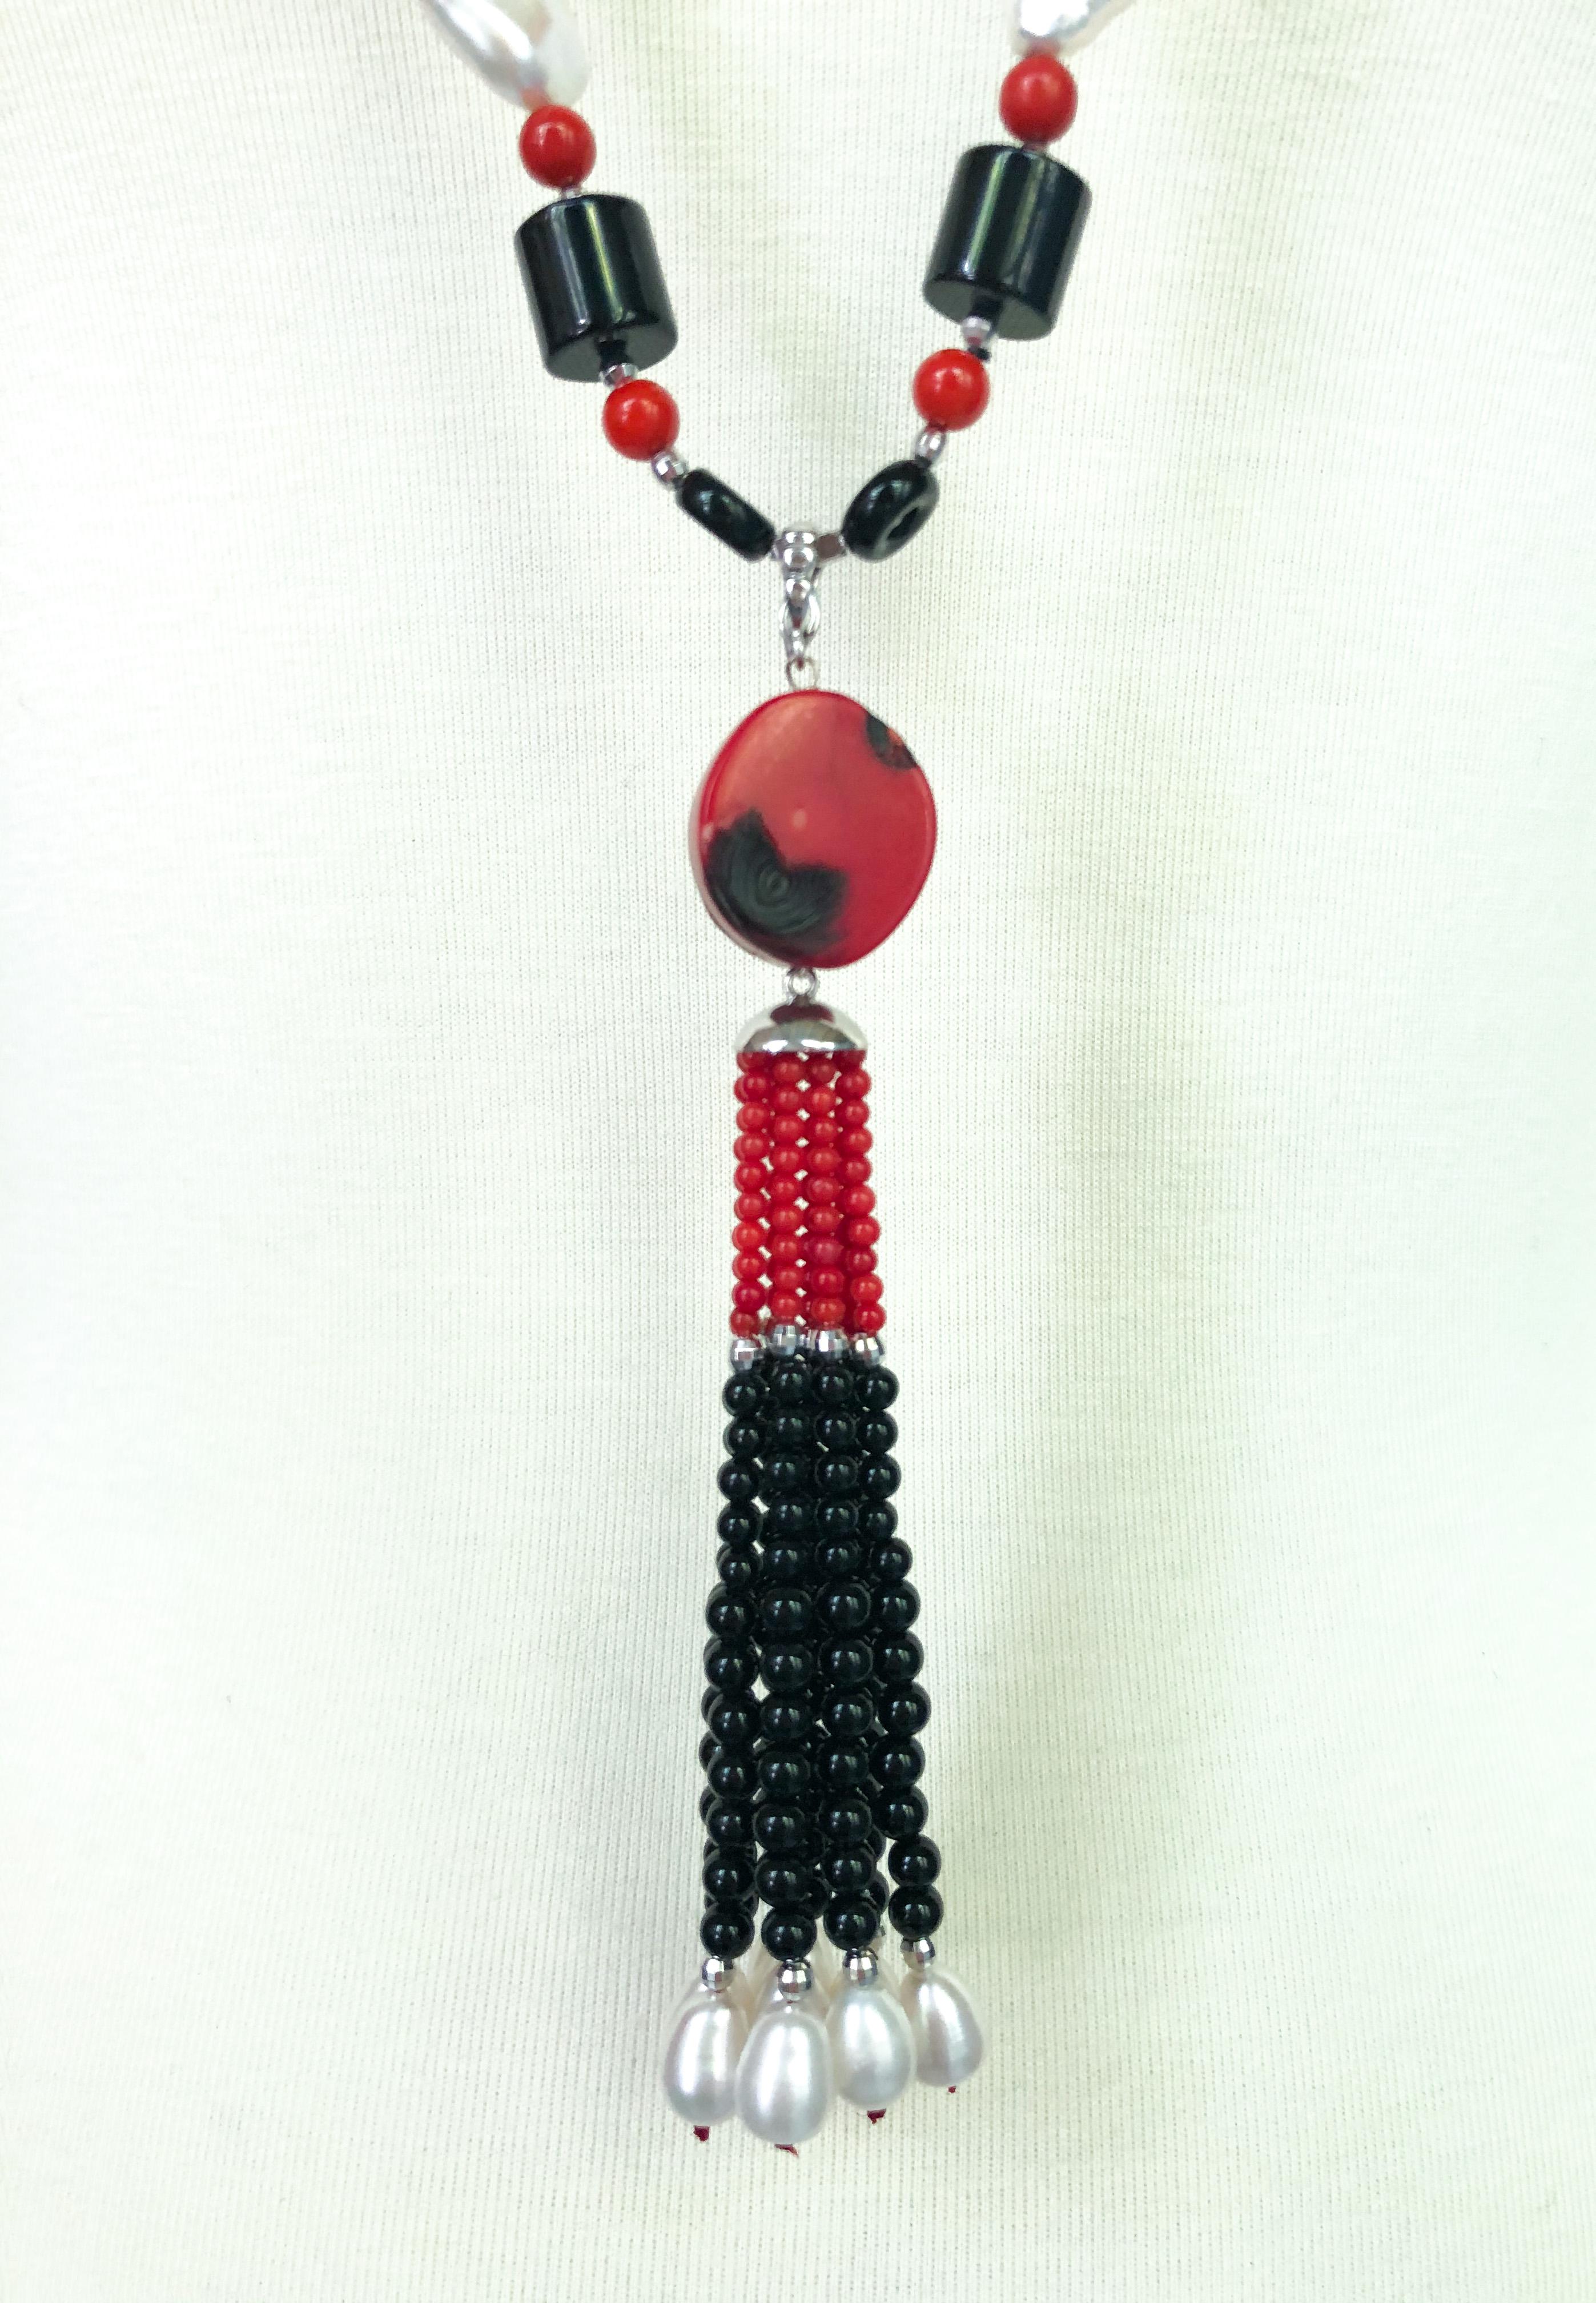 Marina J.'s einzigartige Halskette im Art-Deco-Stil zeichnet sich durch eine Vielzahl von Formen aus: kugelförmige Perlen, zylindrische Onyx-Perlen, Korallen-Tränenperlen und mehr. Dieses auffällige Stück erinnert mit seinem symmetrischen Design und